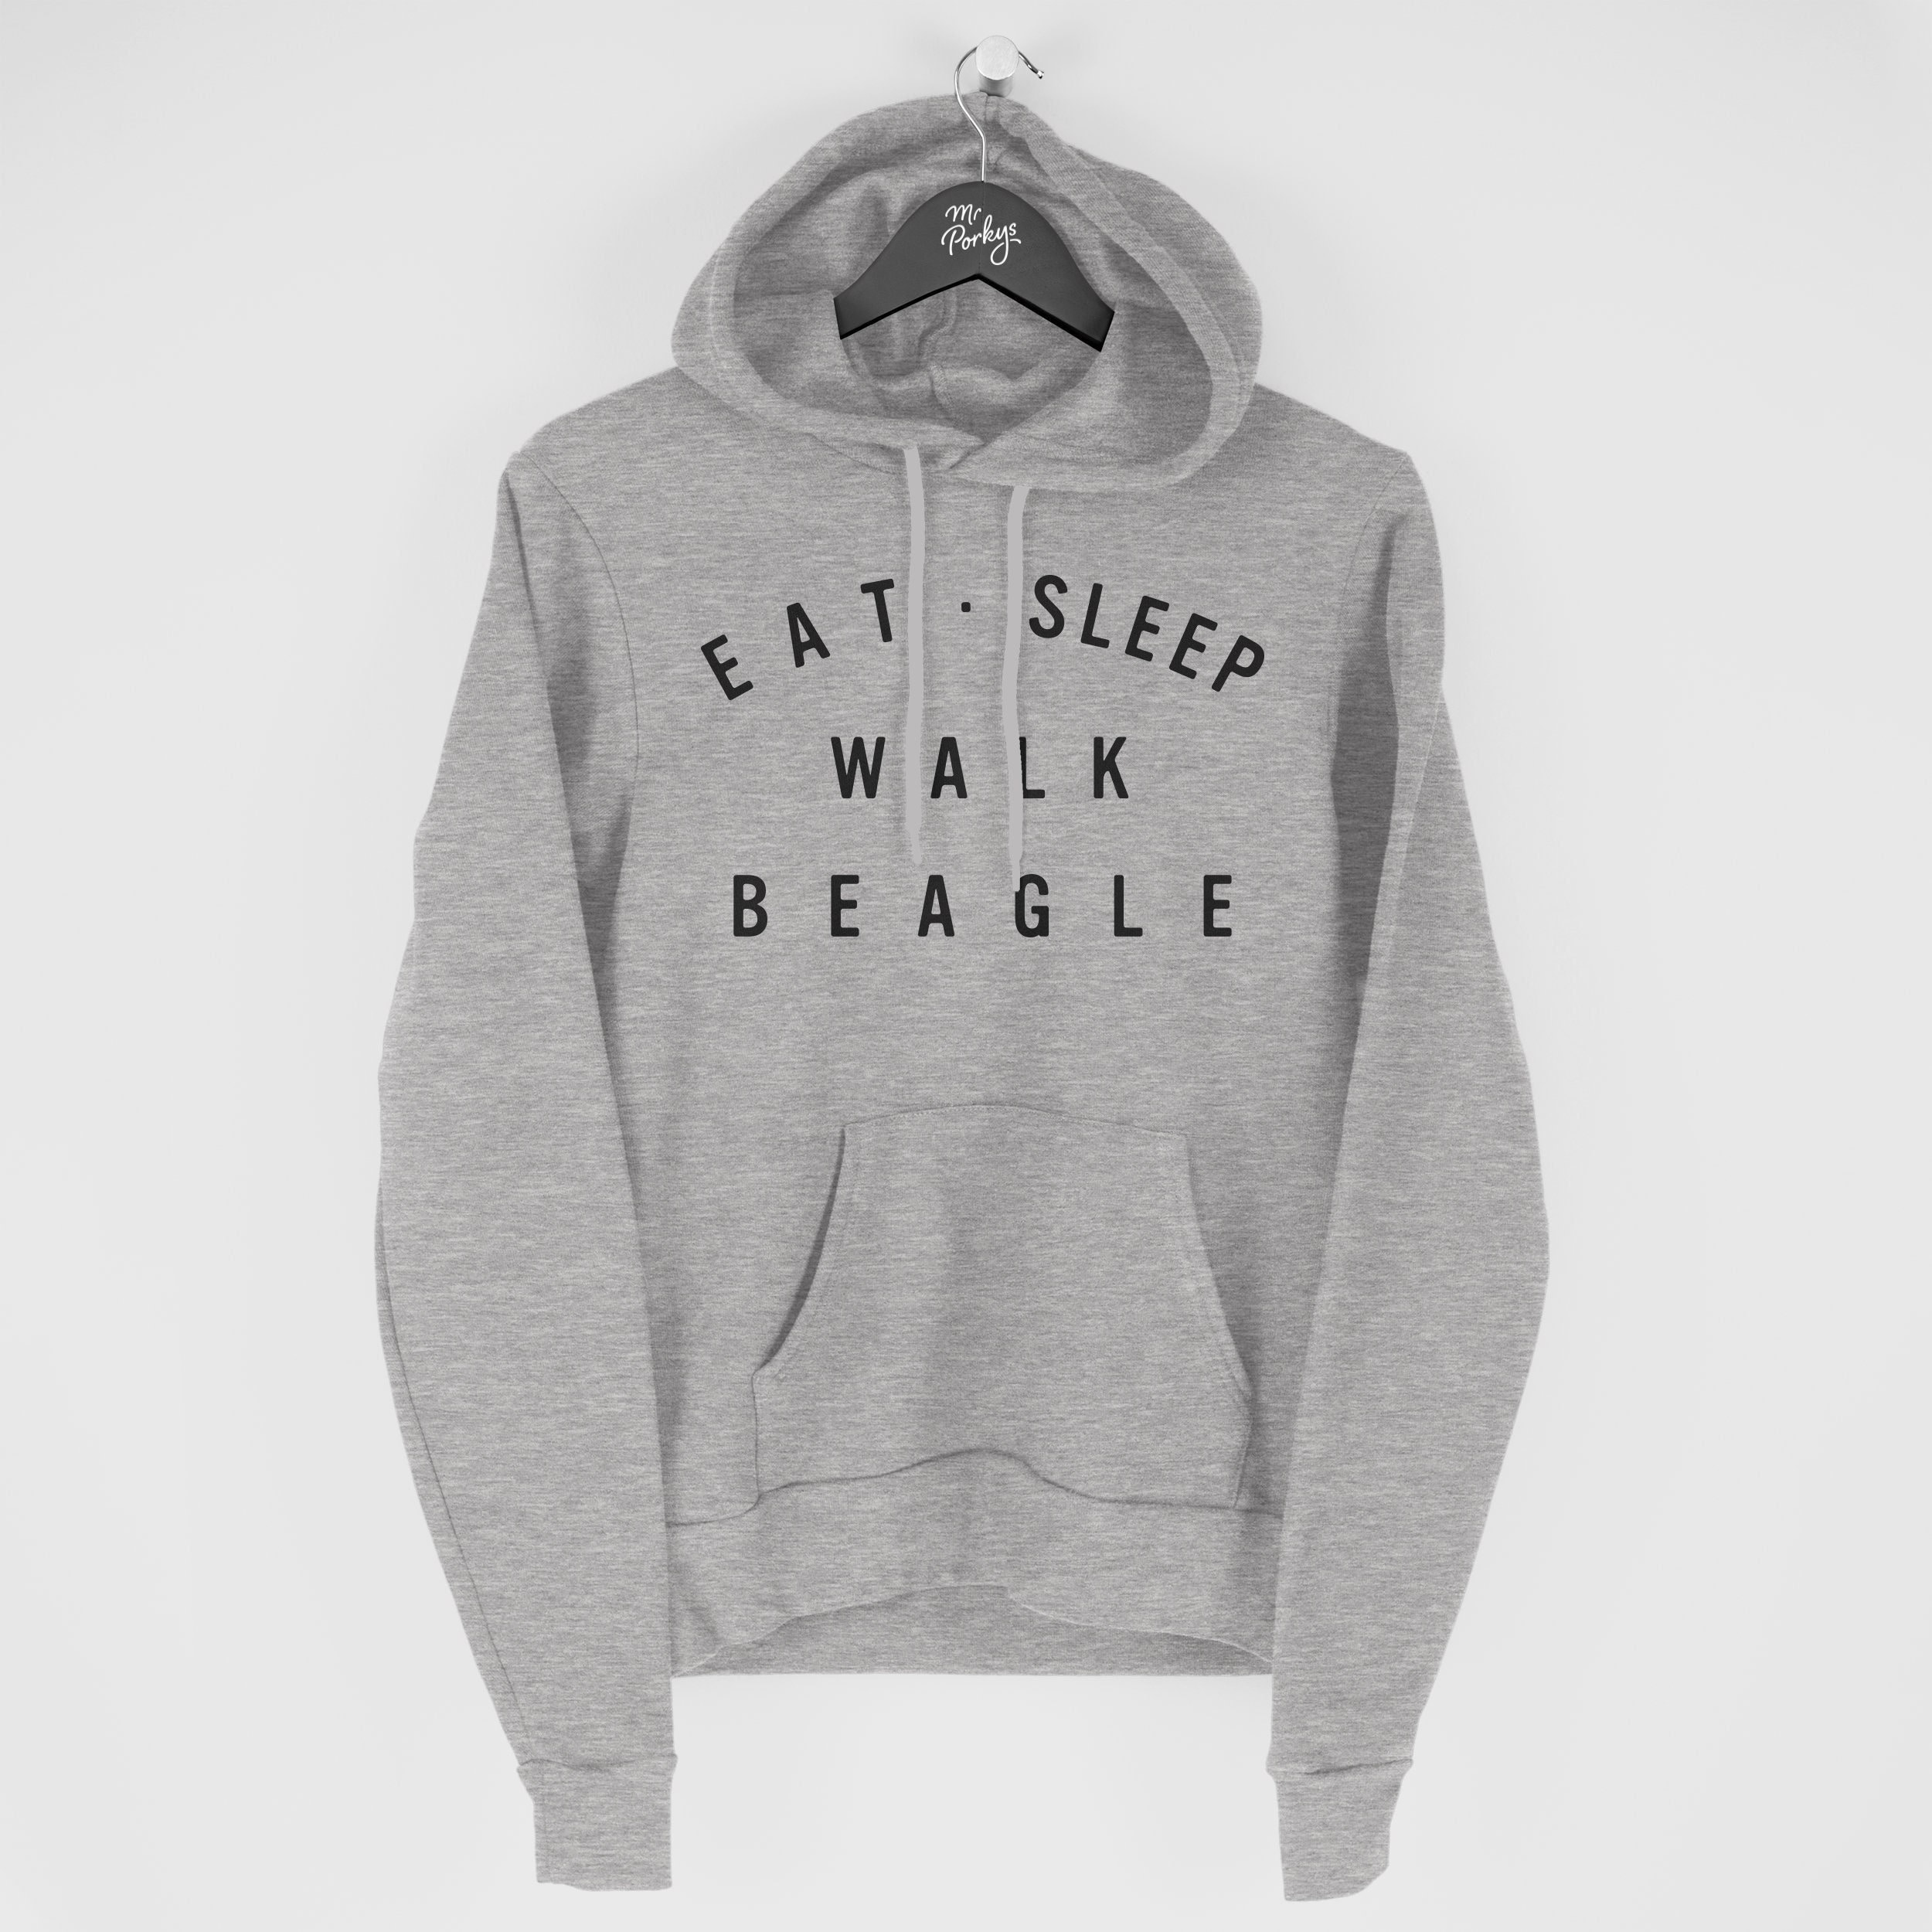 Beagle Hoodie, Eat Sleep Walk Gift For Owner, Hoody